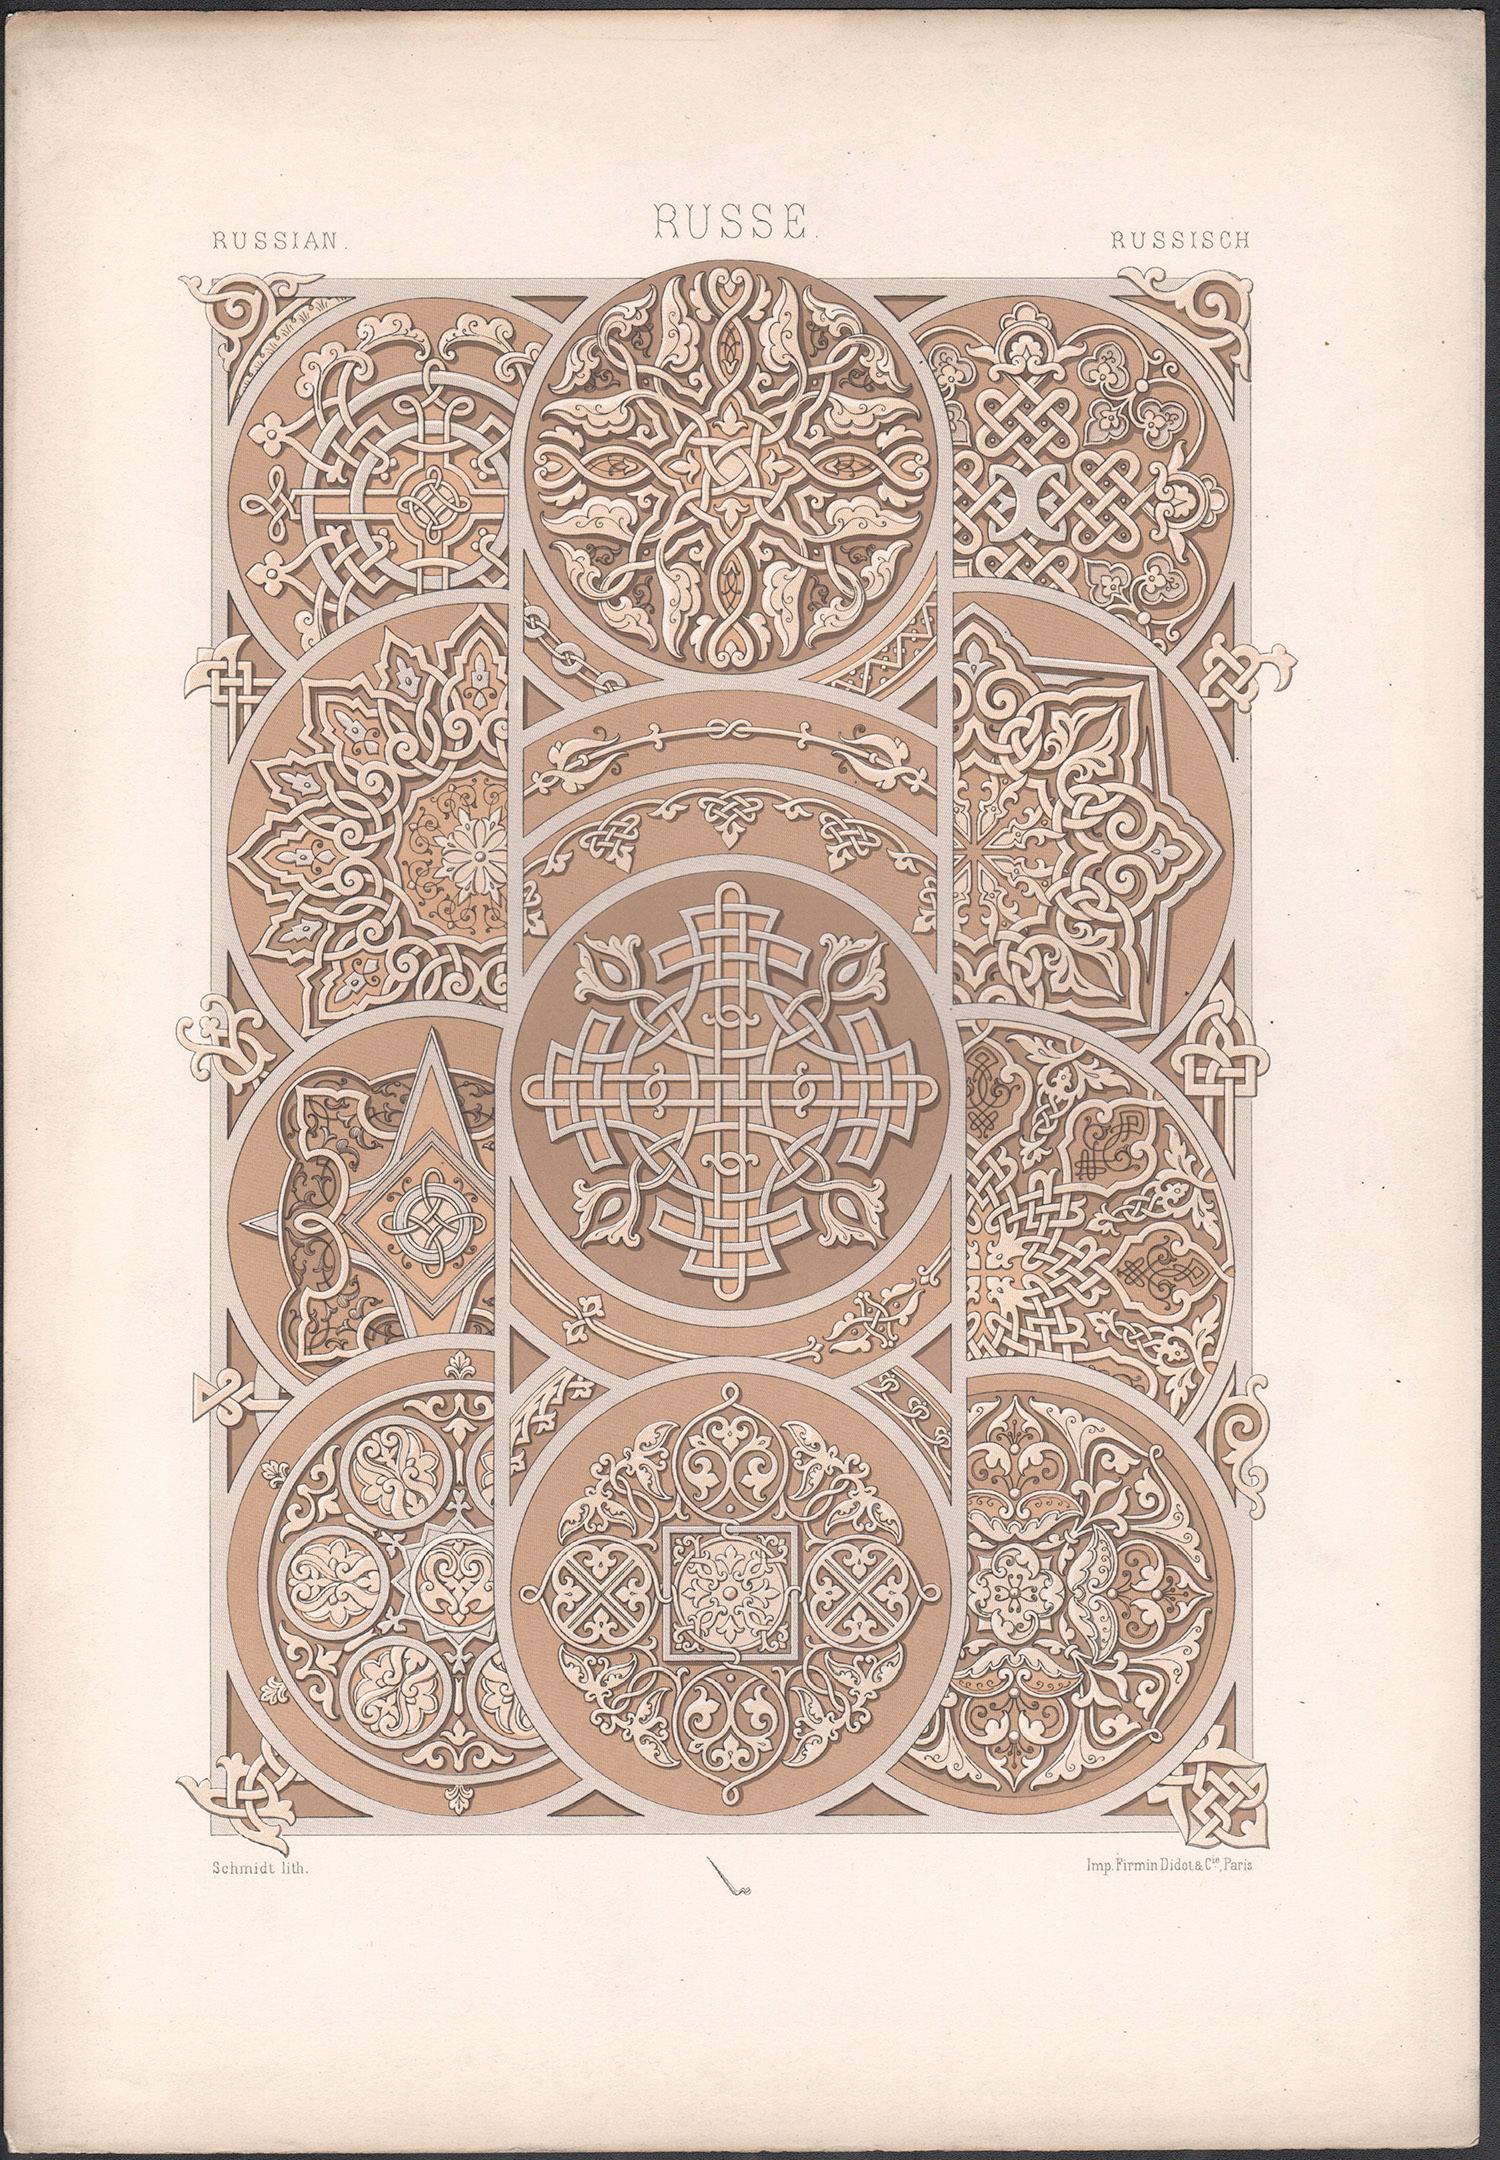 Lithographie russe et française ancienne de Racinet du 19ème siècle - Print de Albert-Charles-Auguste Racinet